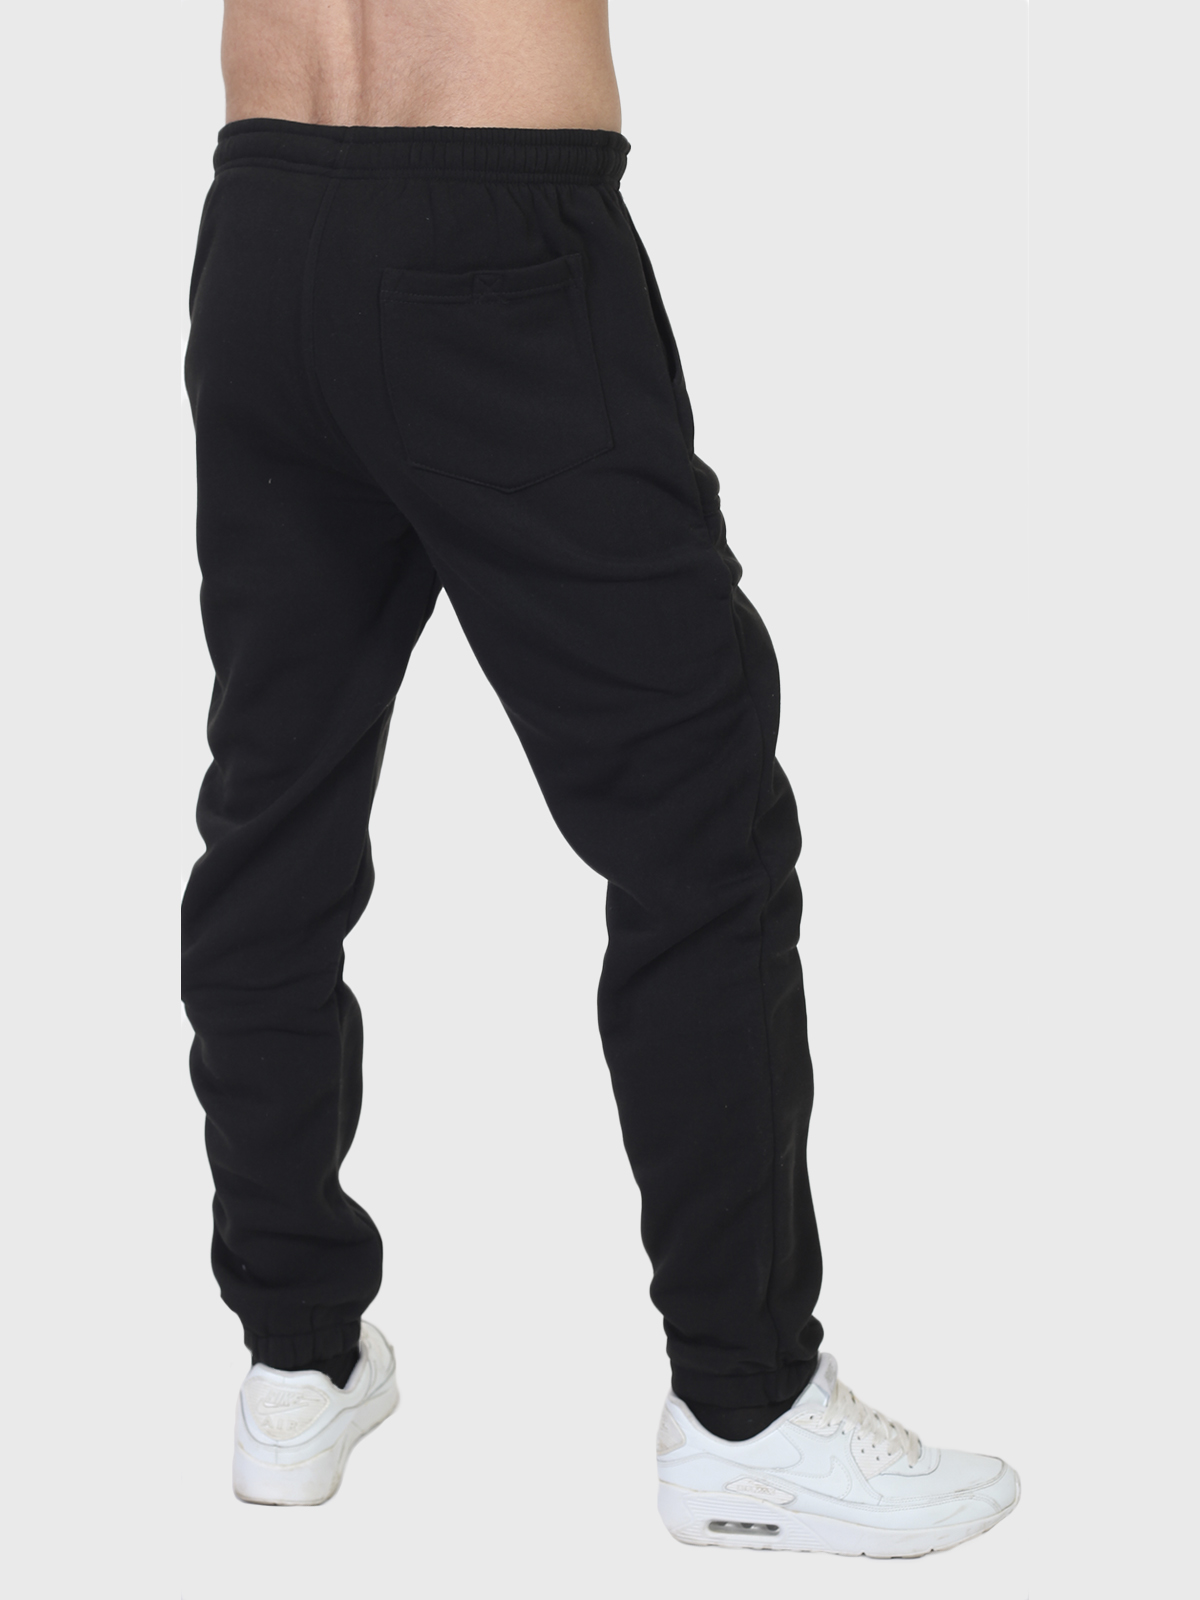 Черные утепленные спортивные штаны Lowes (Австралия) купить в Военпро